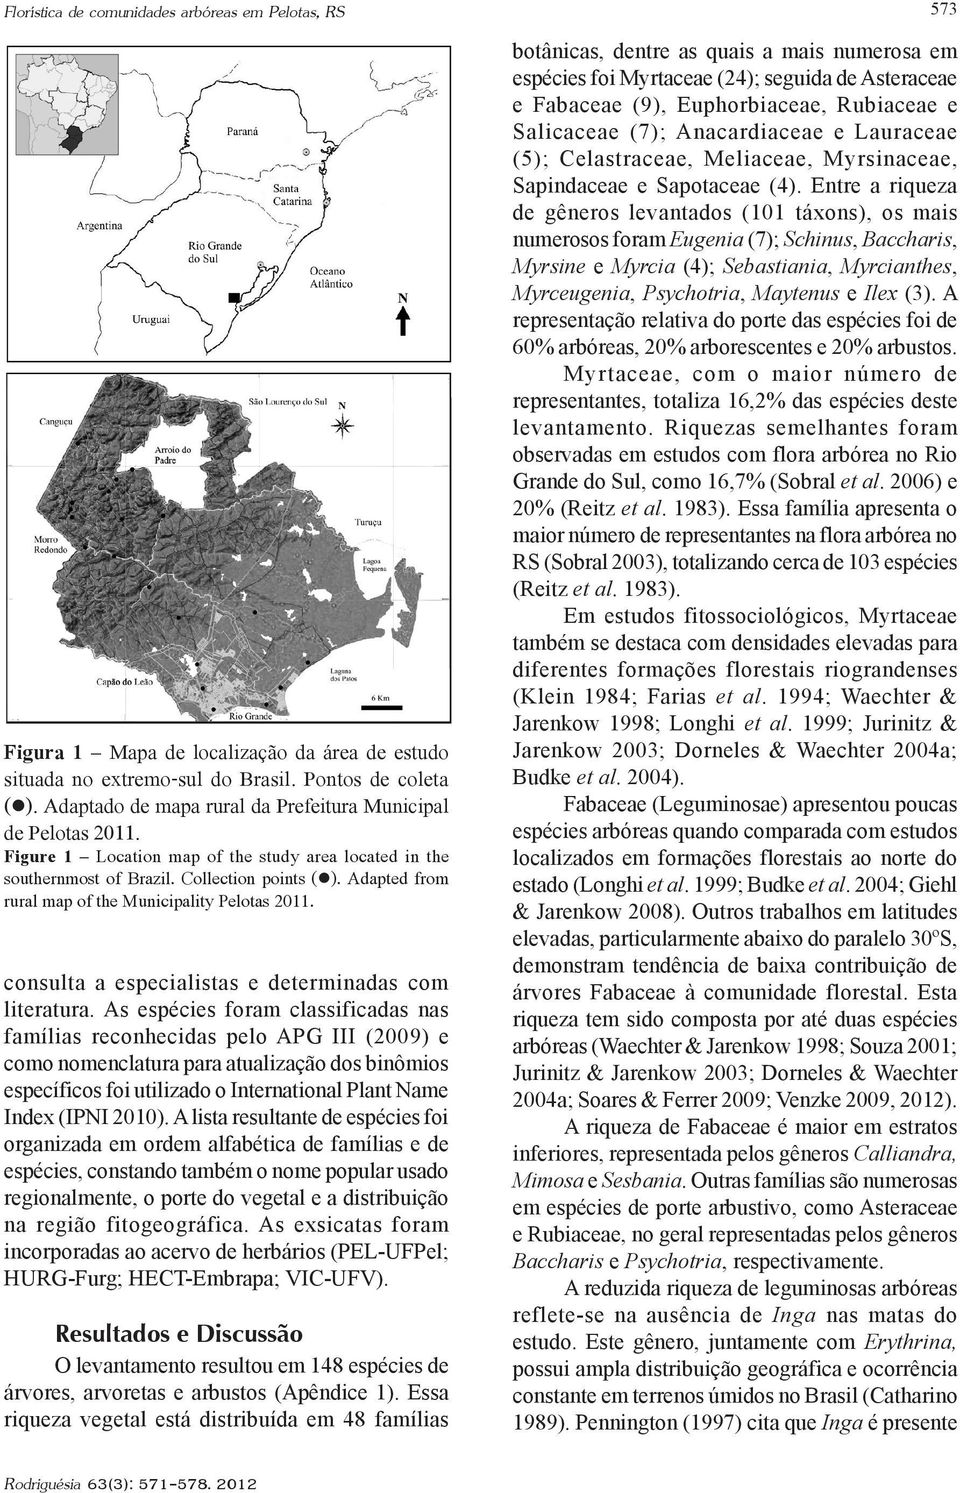 Adapted from rural map of the Municipality Pelotas 2011. consulta a especialistas e determinadas com literatura.